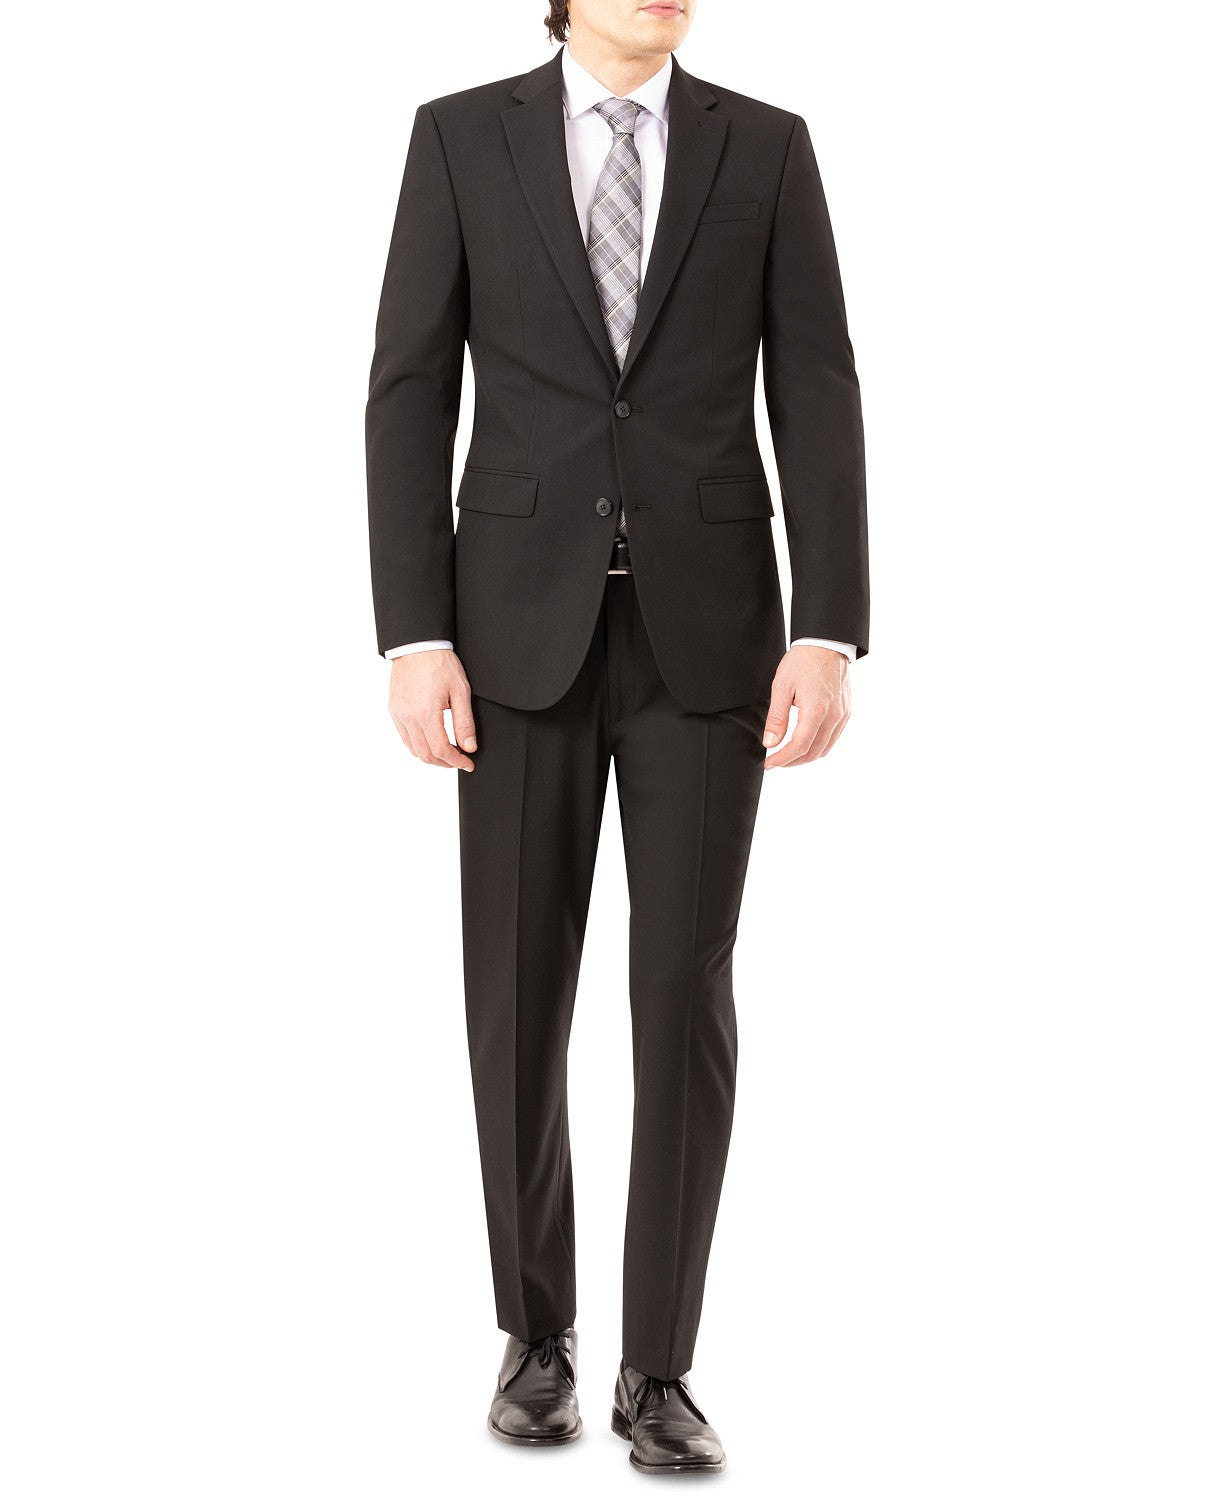 IZOD Men's Classic-Fit Suit Black 38L / 30 x 32 Flat Pant